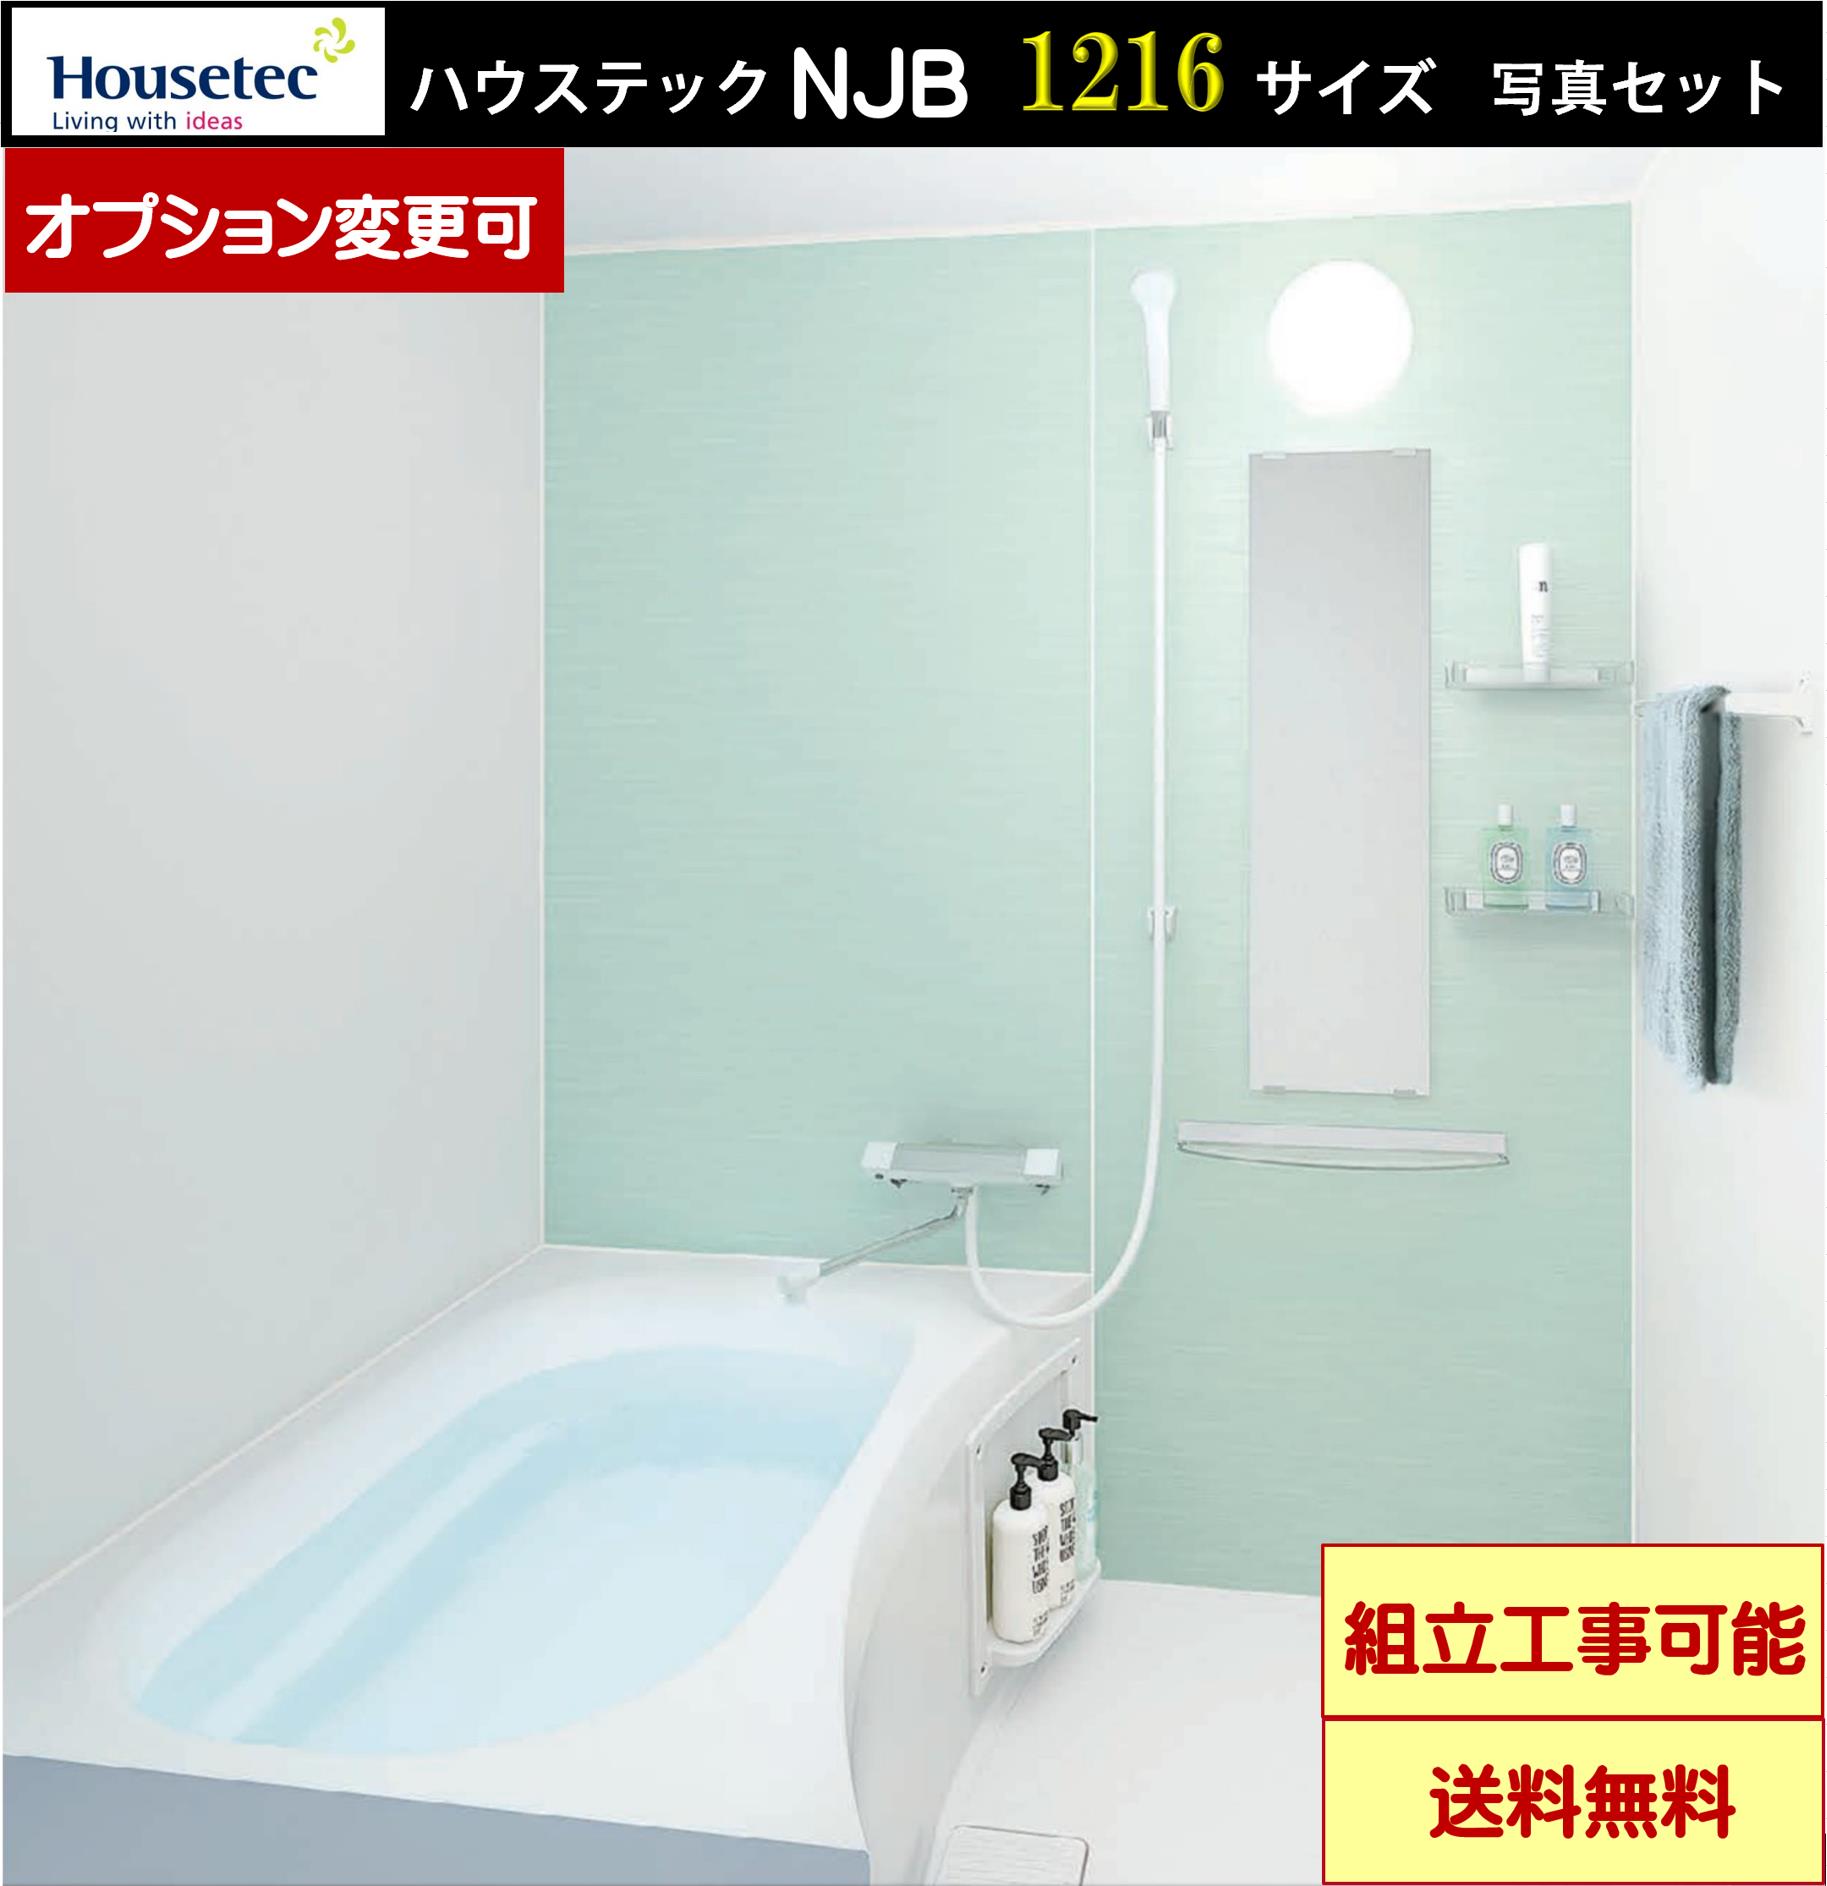 【仕様】ハウステック　マンション・アパート用 NJB1216　(オプション選択可能) 壁：＜フロントチェンジプラン　2枚＞ ベースパネル：ラミリア（プレーンホワイト） フロントパネル：ラミリア（ステップミント） 浴槽・床：フィットラインバス（ミディアムグレー）（一体型） ブレーンフロア（ミディアムグレー） 排水栓：ゴム排水栓 設置仕様：標準（段差床） ドア：折戸（バリアフリー段差・ホワイト） 天井：フラット天井 照明：モチ形照明　1灯 水栓：壁付サーモ洗場水栓（メッキ・eシャワーNfセット） タオル掛け：ホワイト系ブラケット フロフタ：なし 設置最小寸法： W1670*D1270*H2389 ※ドア位置はAR，AL，BR，BLより御選び下さい。 【発送について】 *関東地区限定無料配送（メーカー通常納期2-3週間程度） *ドライバー1名での配送で原則車上渡しとなります。（荷受作業はお客様でお願いします） 【注意事項】 ○ご不在の場合に商品の持ち帰り、再配送には高額の費用が発生致します。 ○詳しい説明はPCサイドご参考お願い致します。